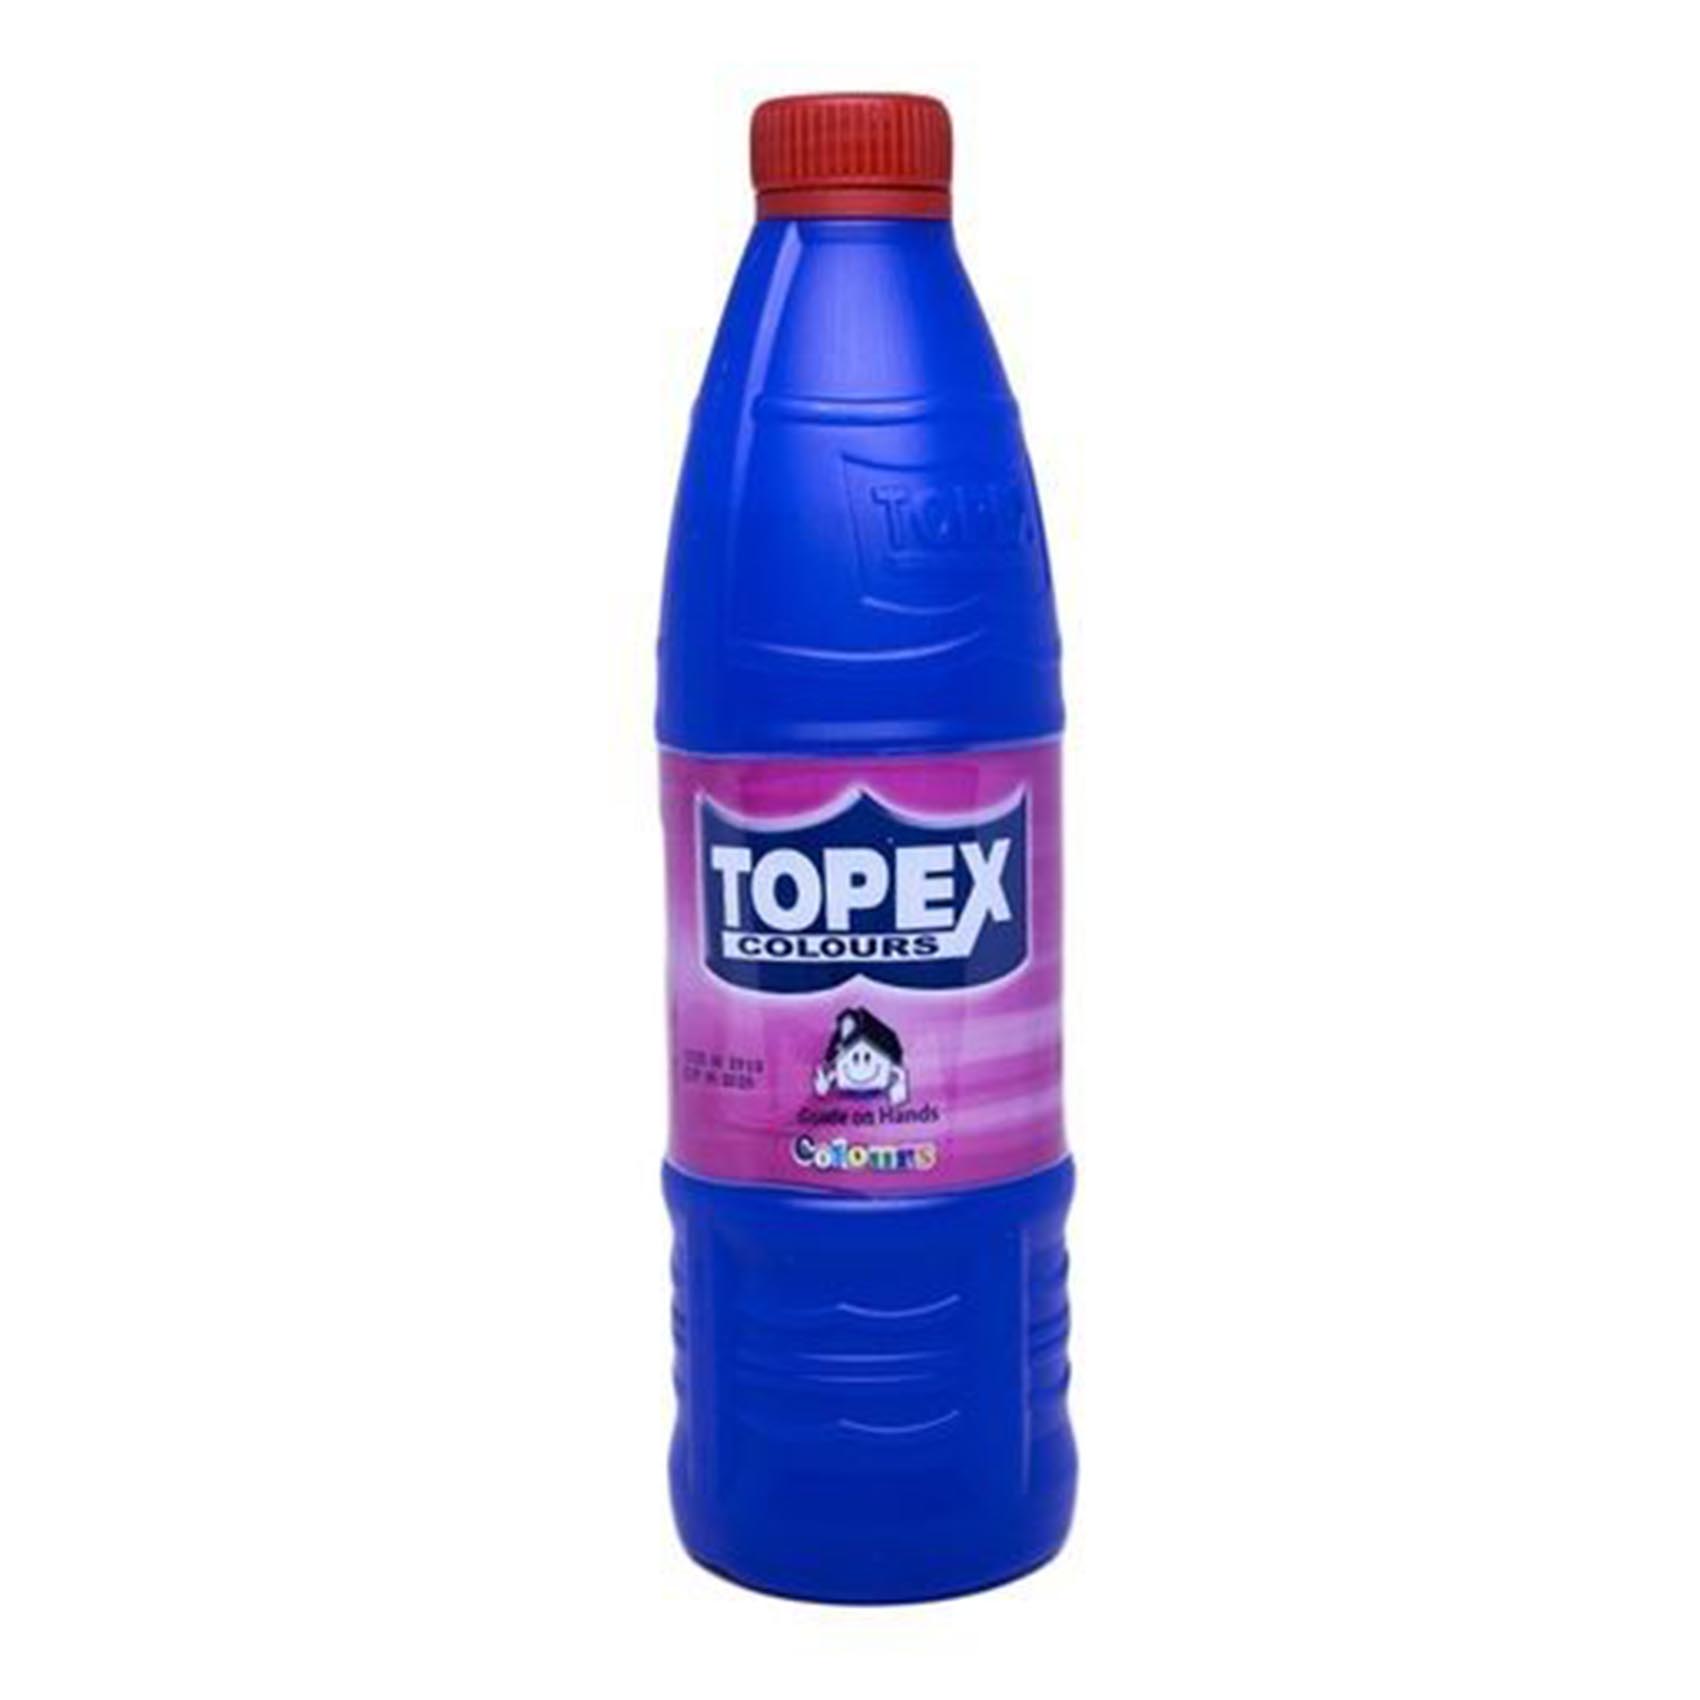 Topex Bleach Colours 500Ml